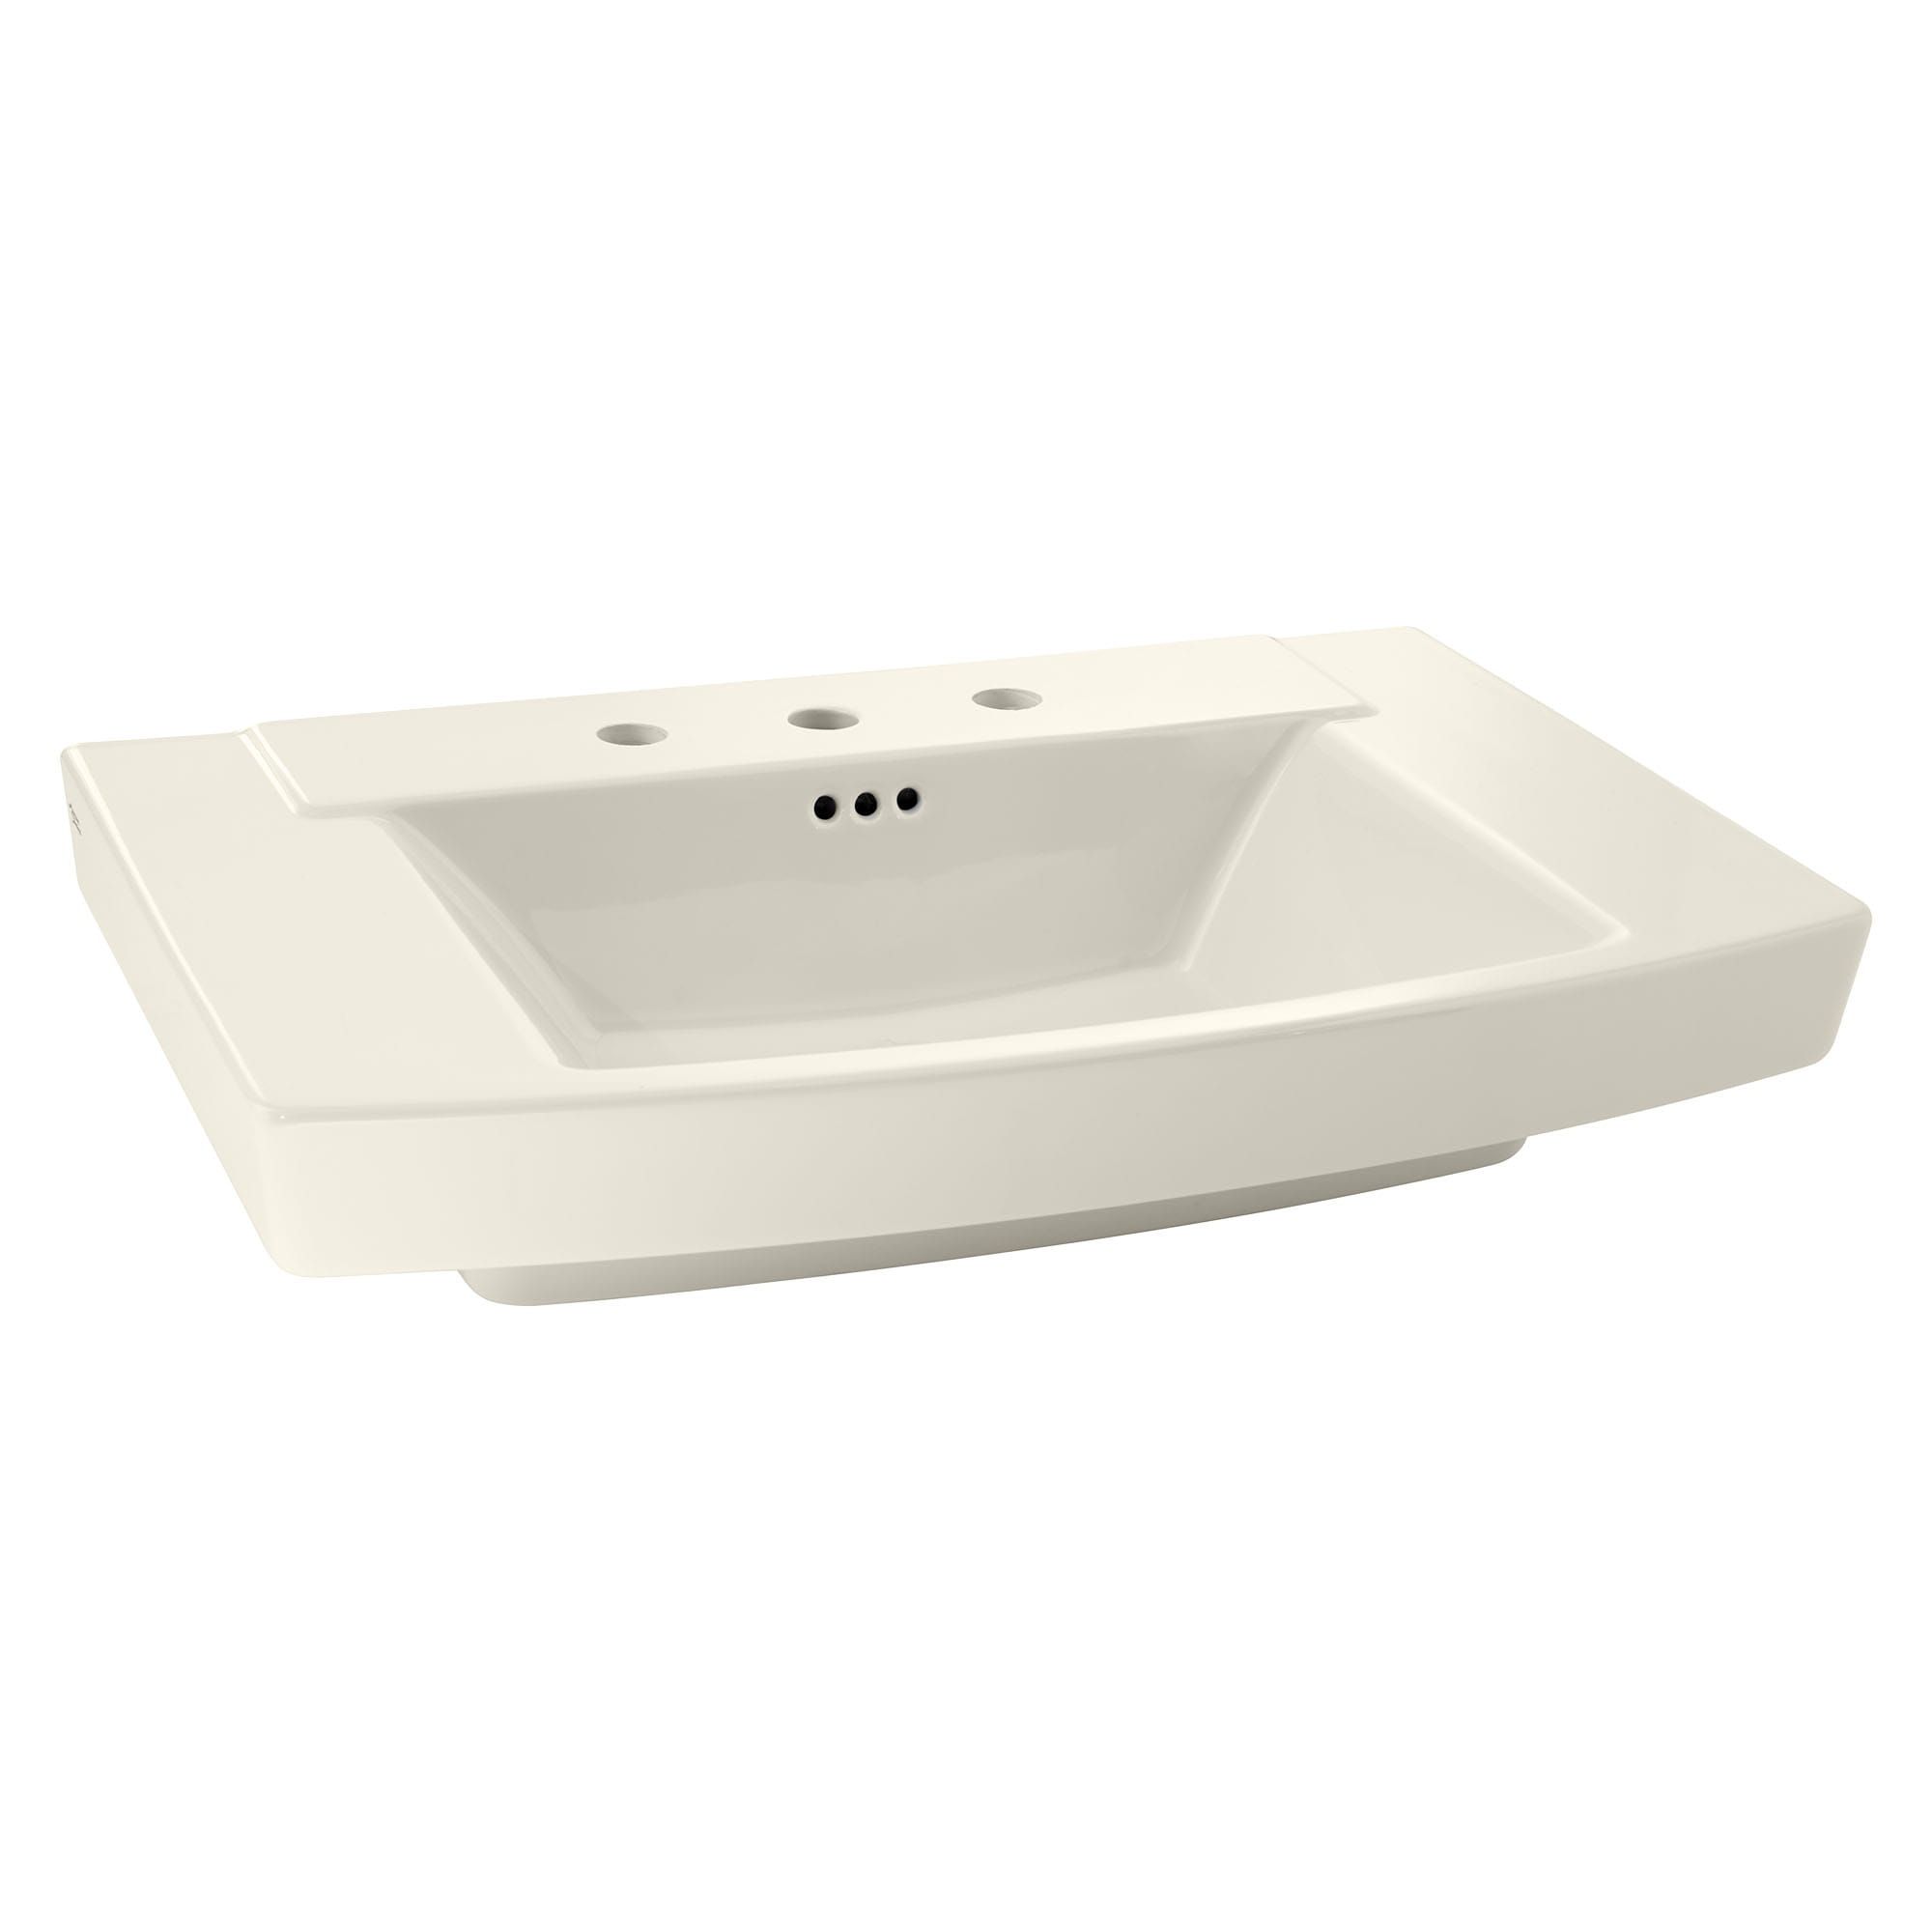 Townsend® 8-Inch Widespread Pedestal Sink Top